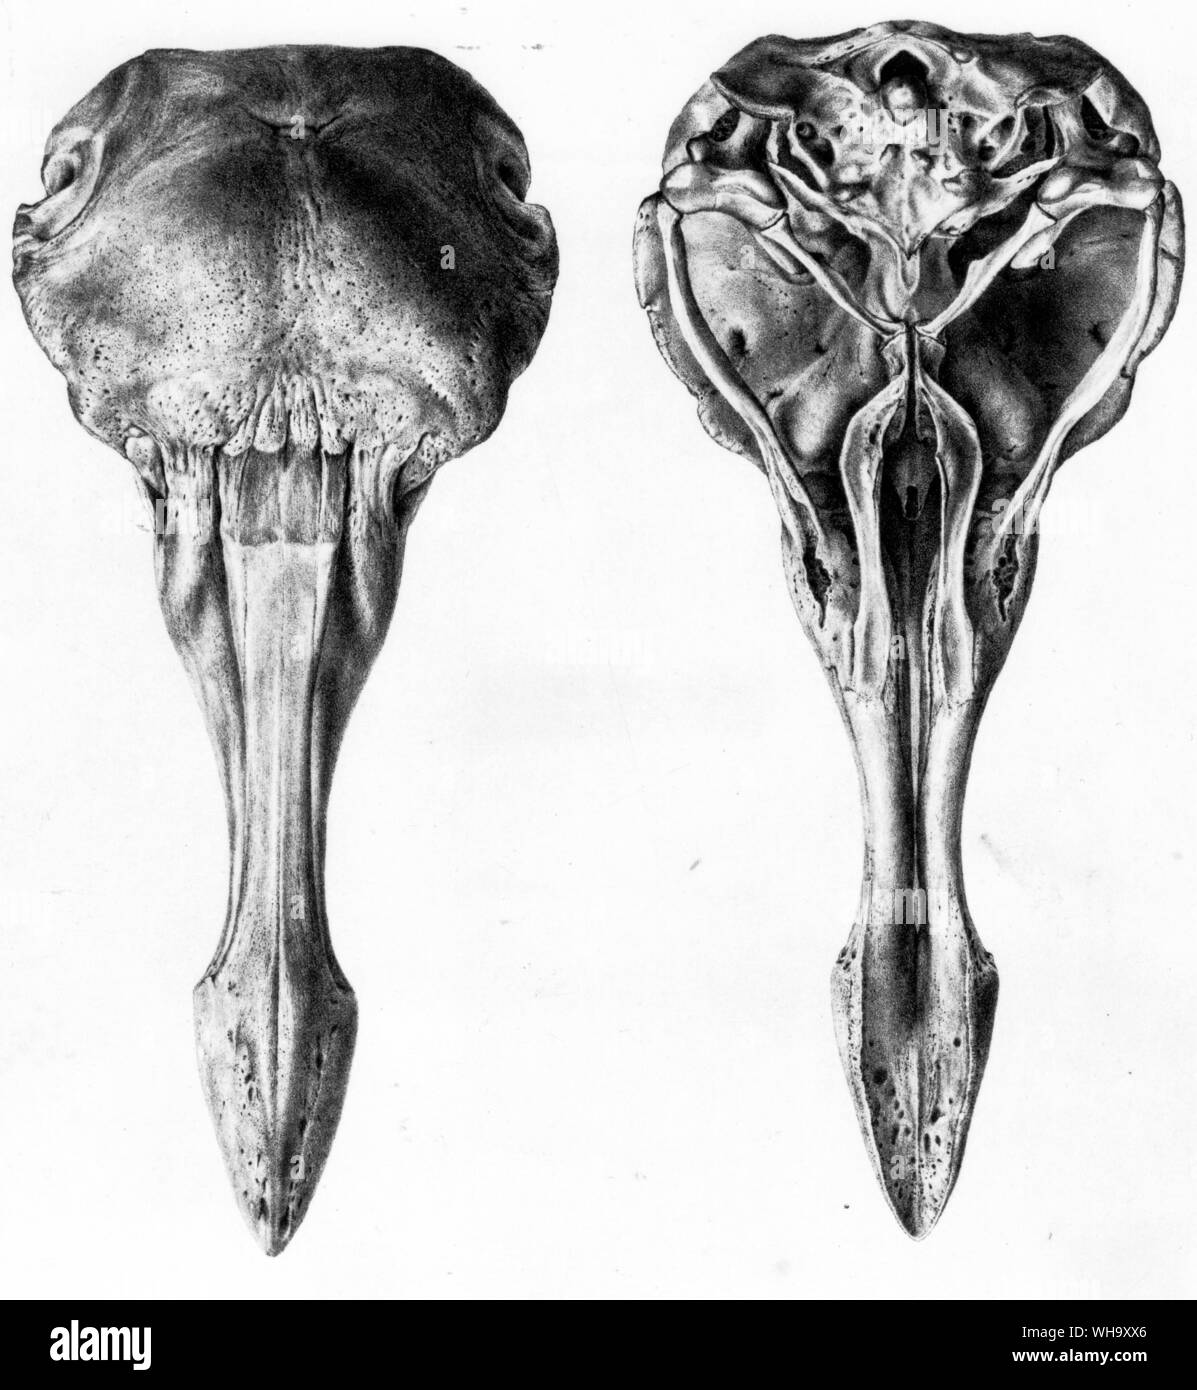 Crâne Dodo de ci-dessus et ci-dessous. Lithographies de S.E. Strickland et A.G. Melville, le Dodo et sa famille (Londres, 1848) - longueur de 100cm (3ft 3in) Banque D'Images